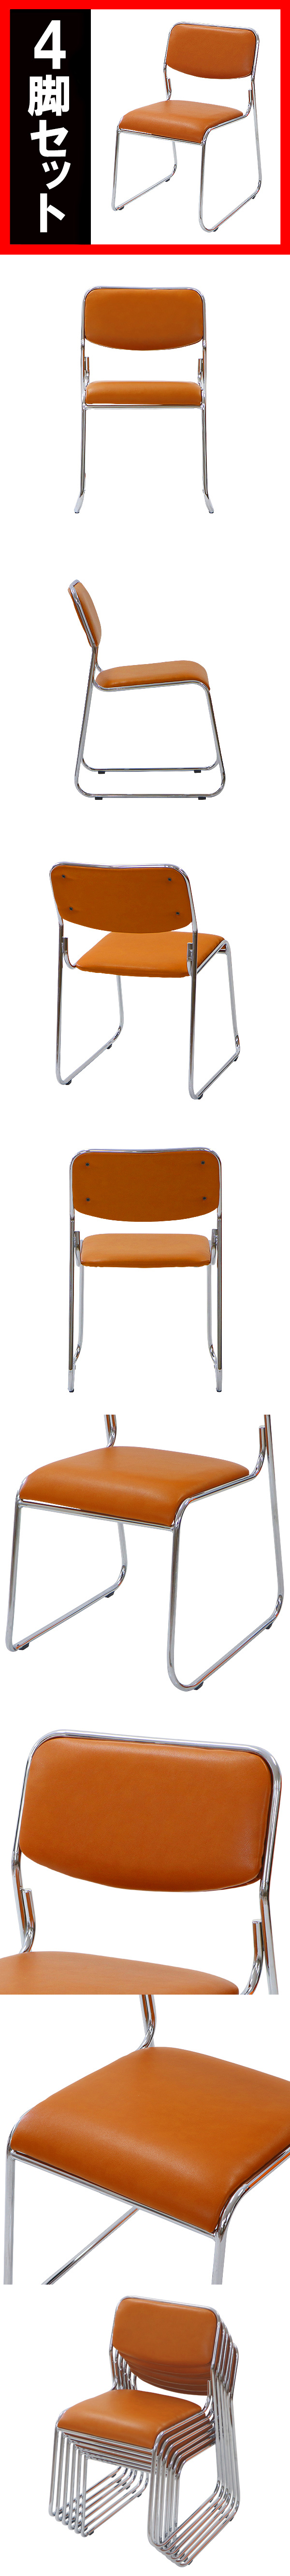 販売売上送料無料 4脚セット ミーティングチェア 会議イス 会議椅子 スタッキングチェア パイプチェア パイプイス パイプ椅子 キャメル パイプイス